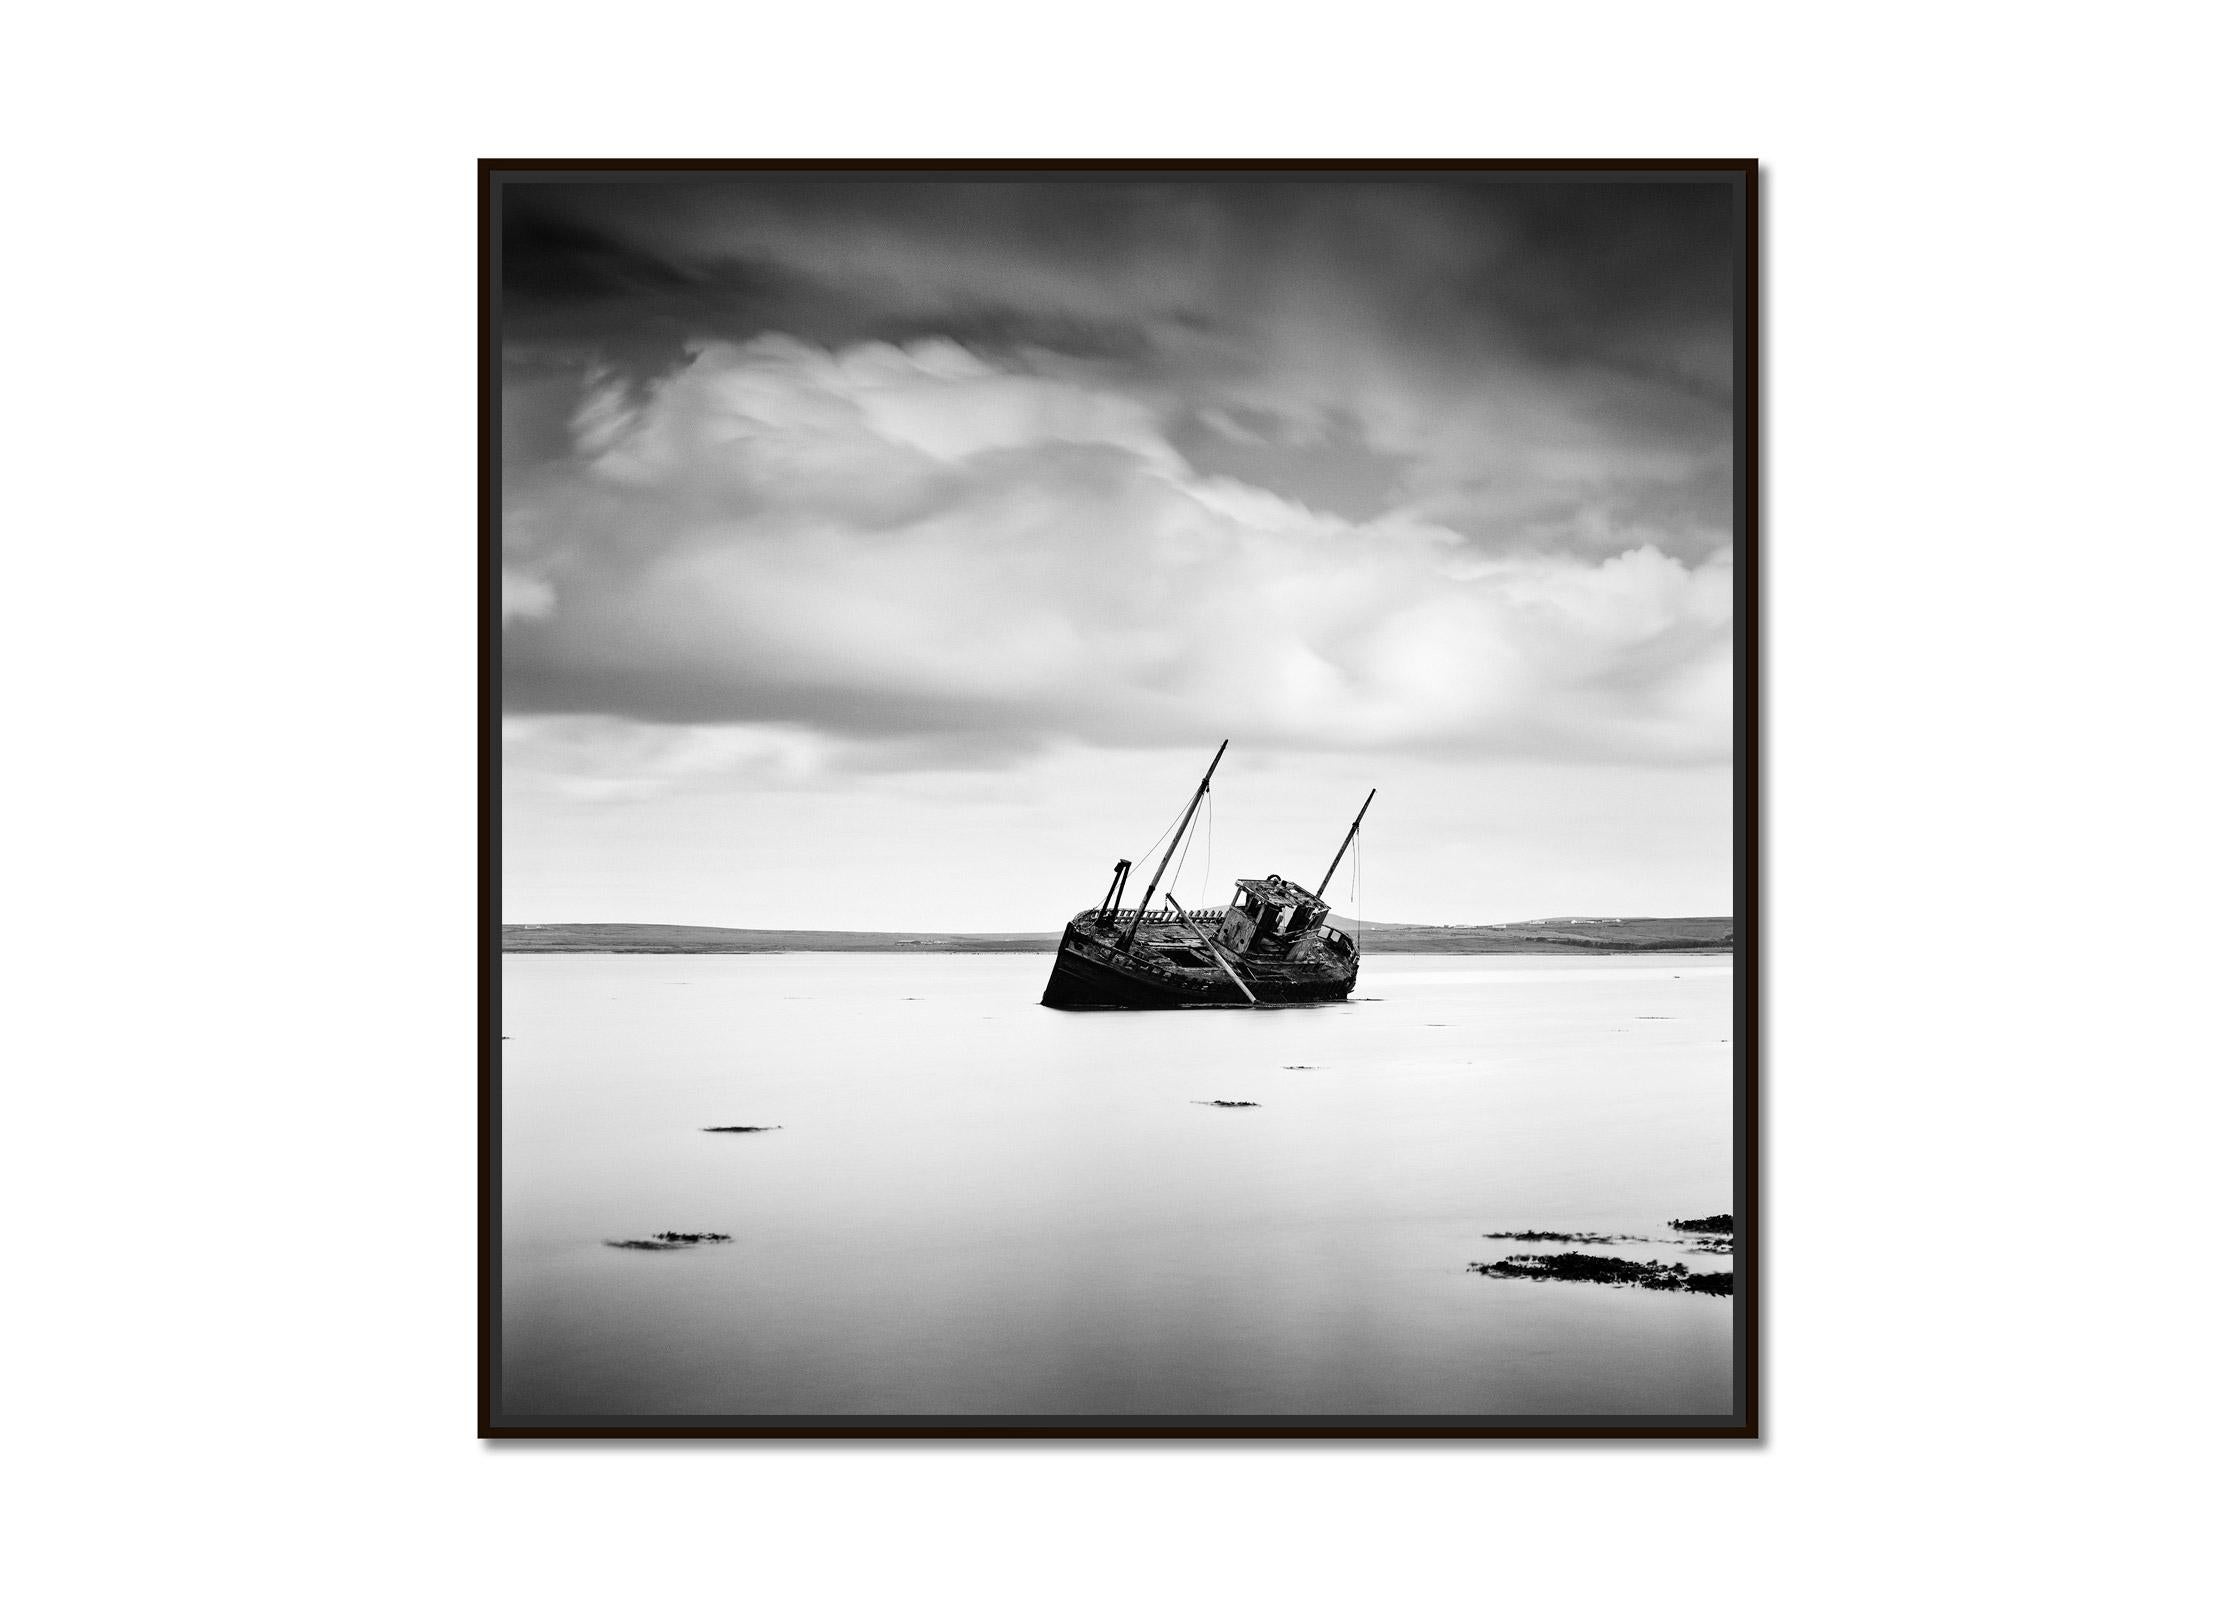 Bateau de pêche échoué, plage, Irlande, photographie noir et blanc, paysage - Photograph de Gerald Berghammer